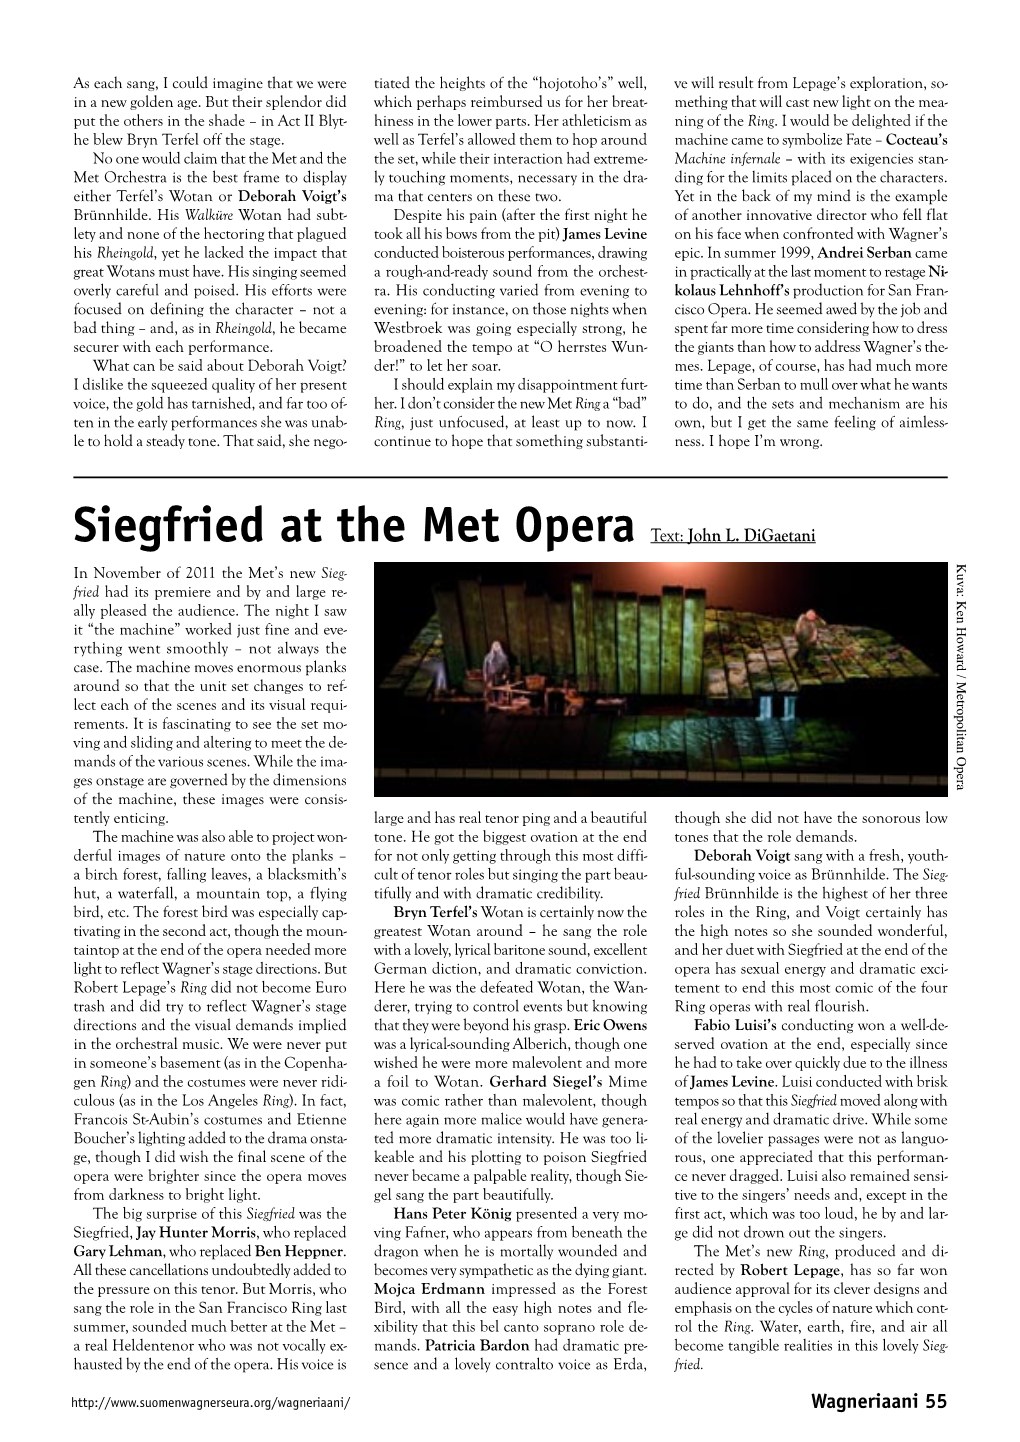 Siegfried at the Met Opera Text: John L. Digaetani